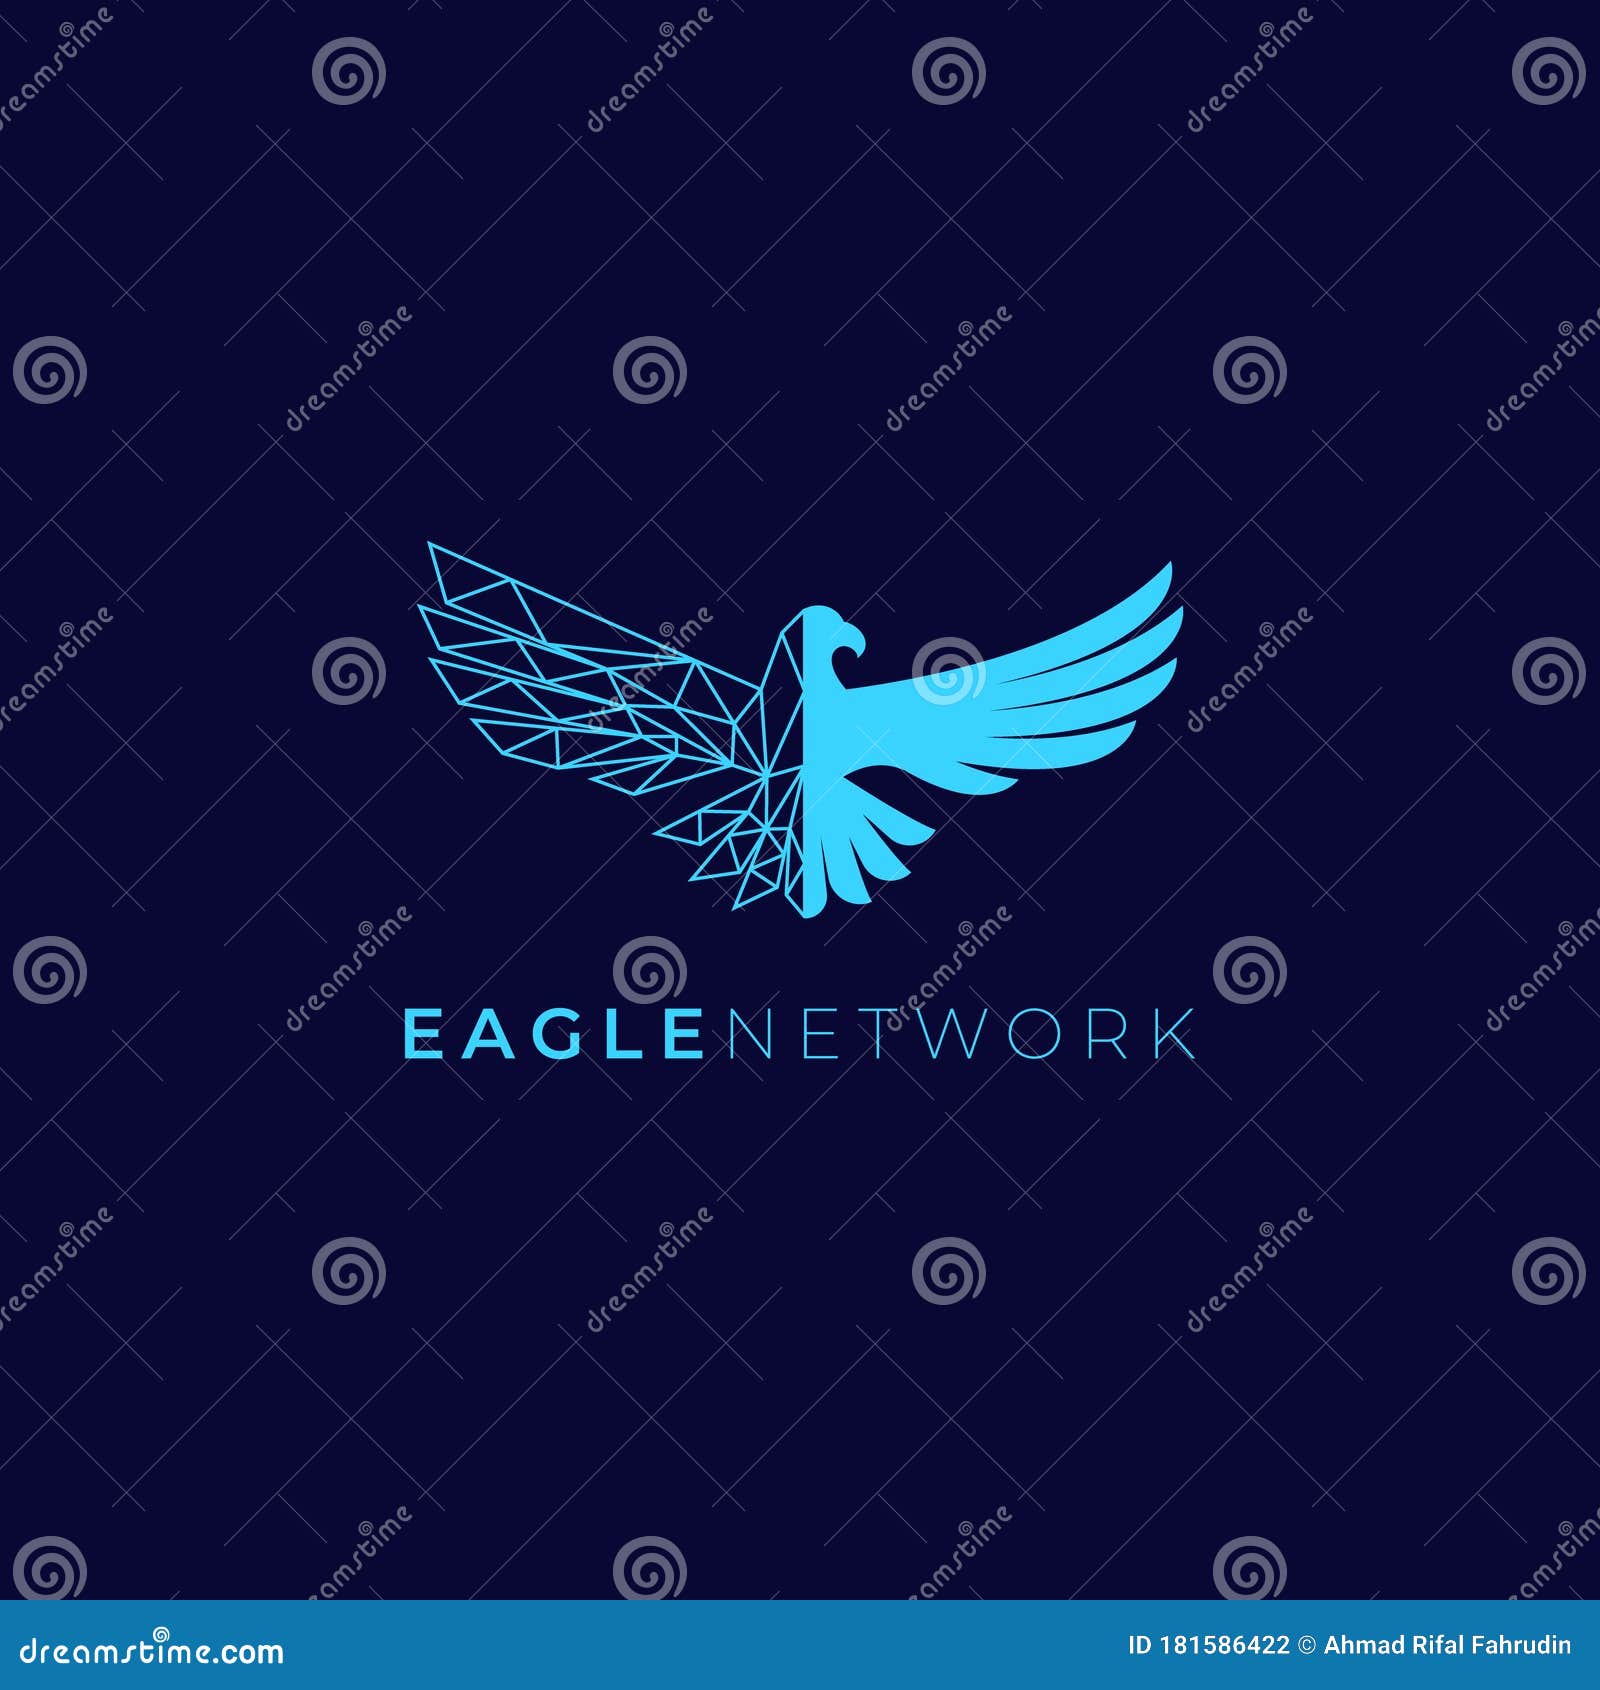 eagle network